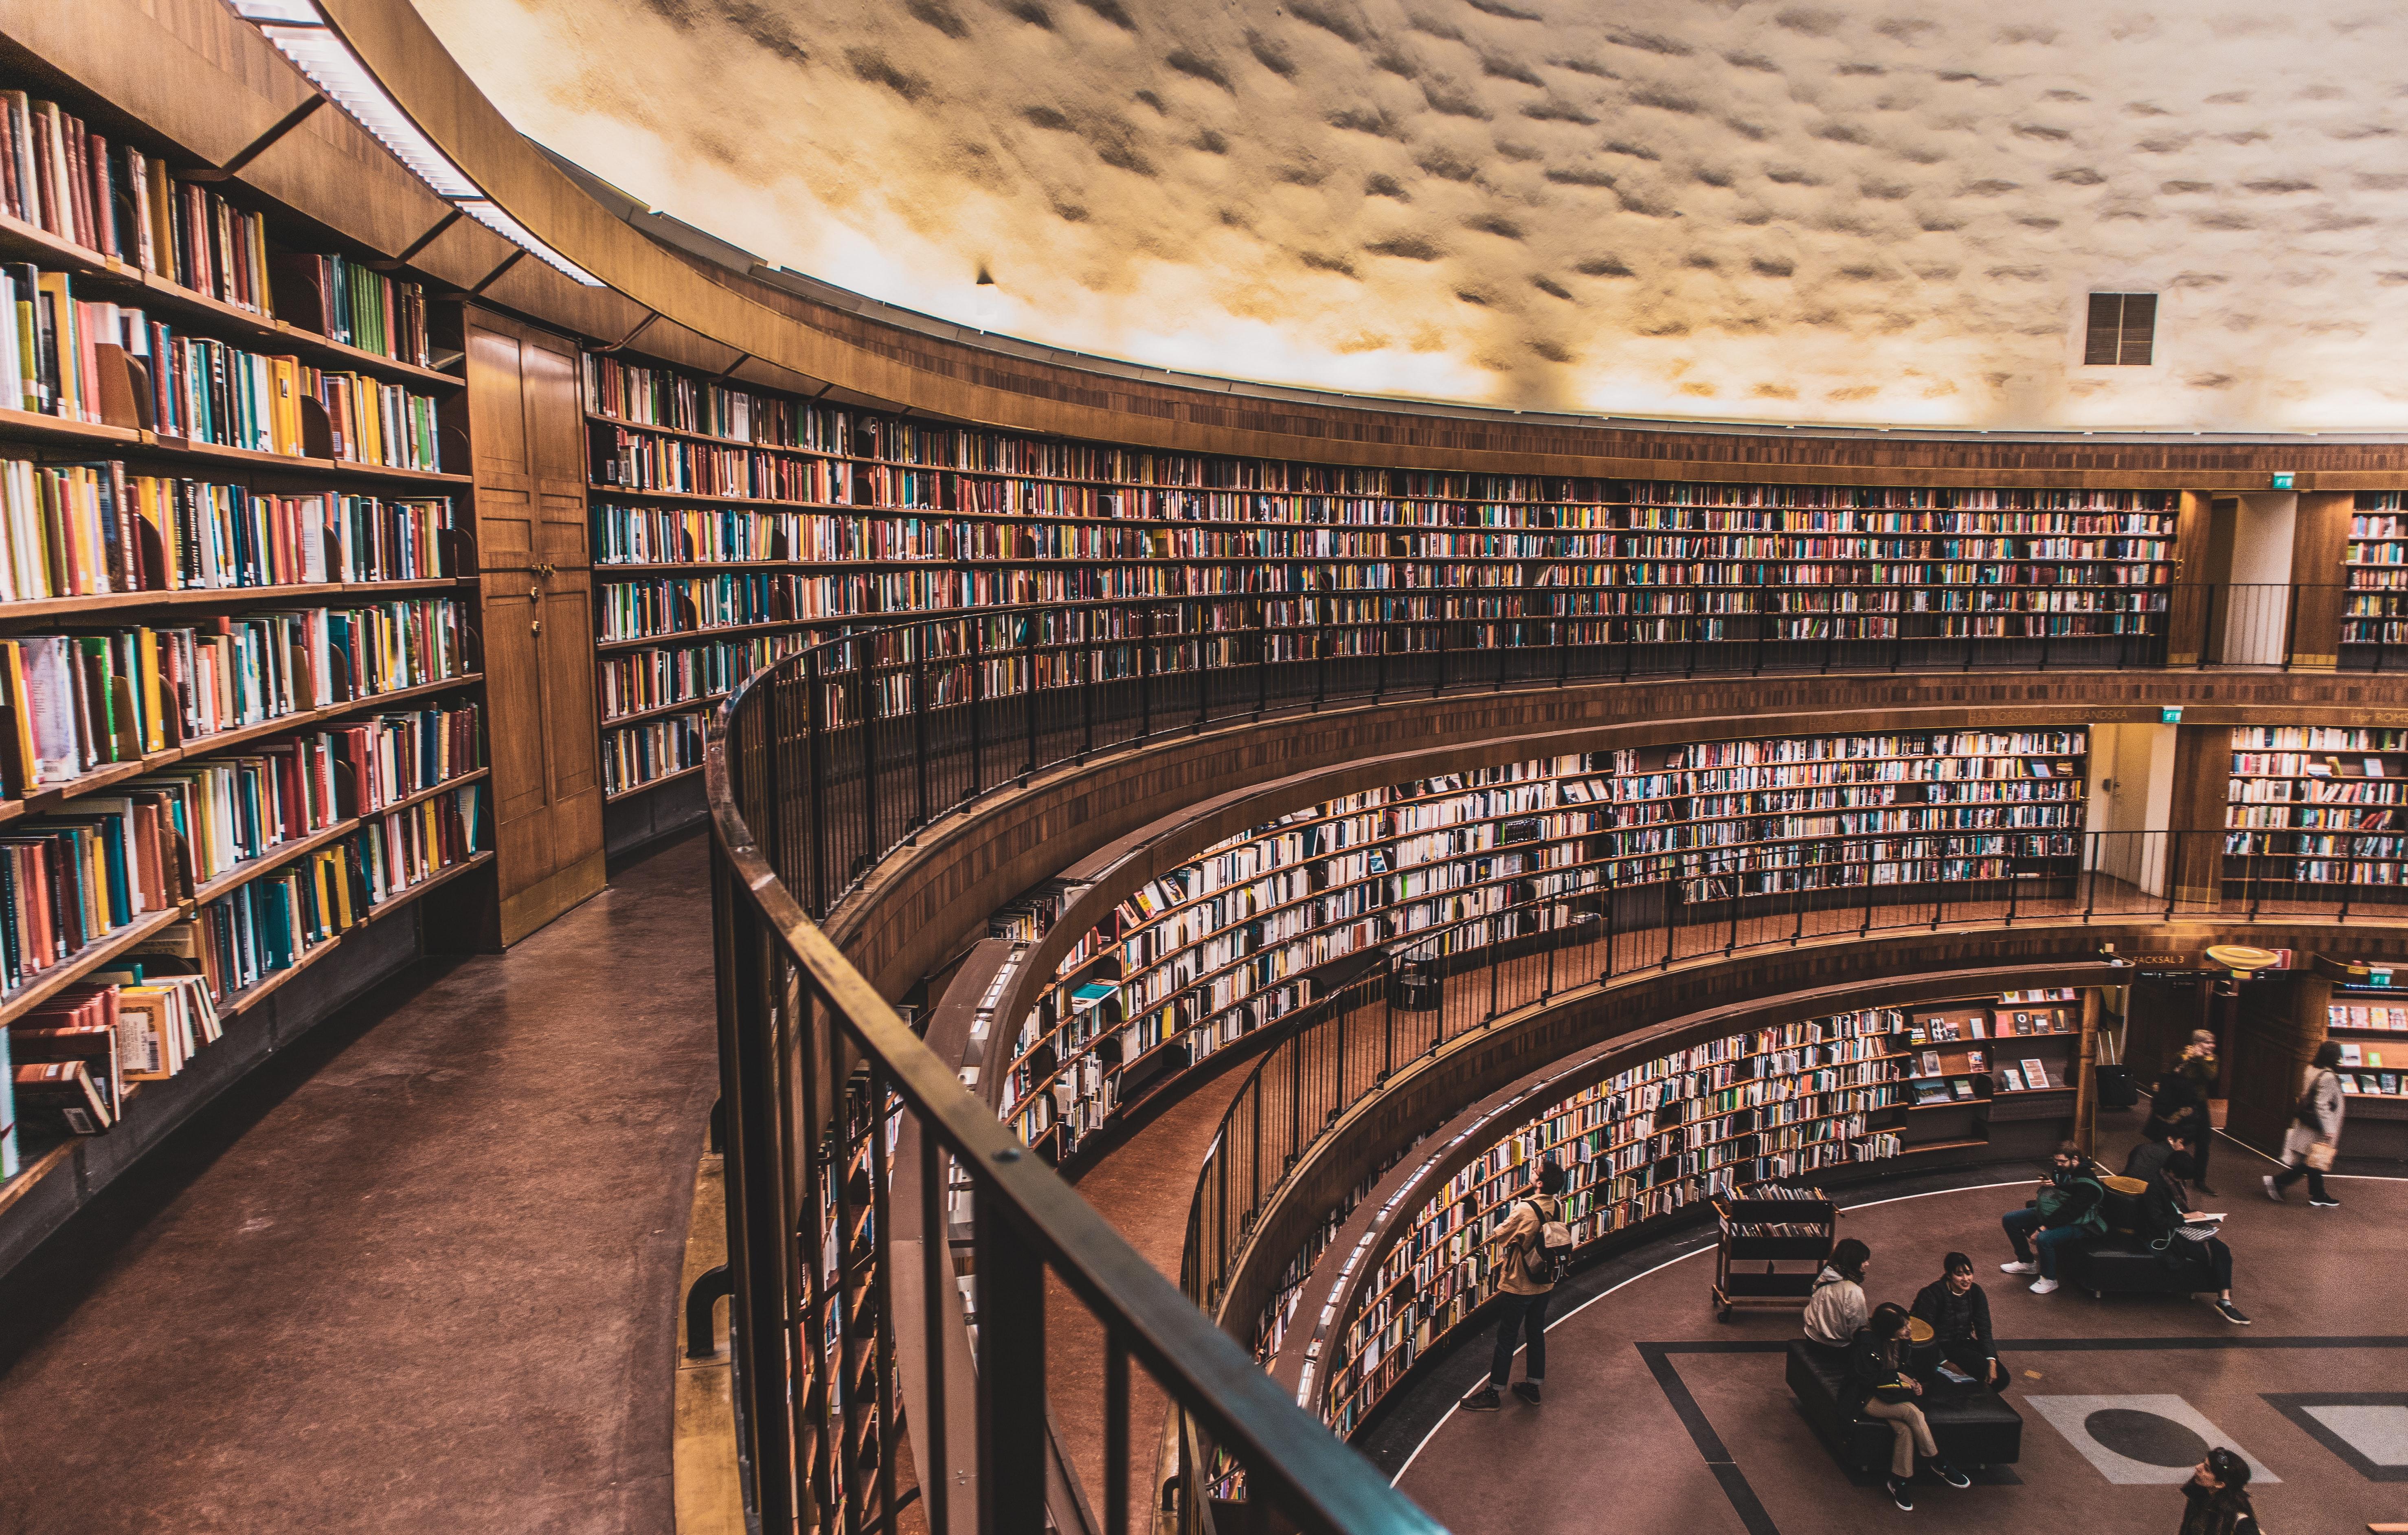 Библиотека в ней находится. Библиотека «University Club Library», Нью- Йорк, США. (Peter Bond). Теологический зал библиотеки Страговского монастыря, Прага, Чехия. Крупные библиотеки. Библиотека фото.